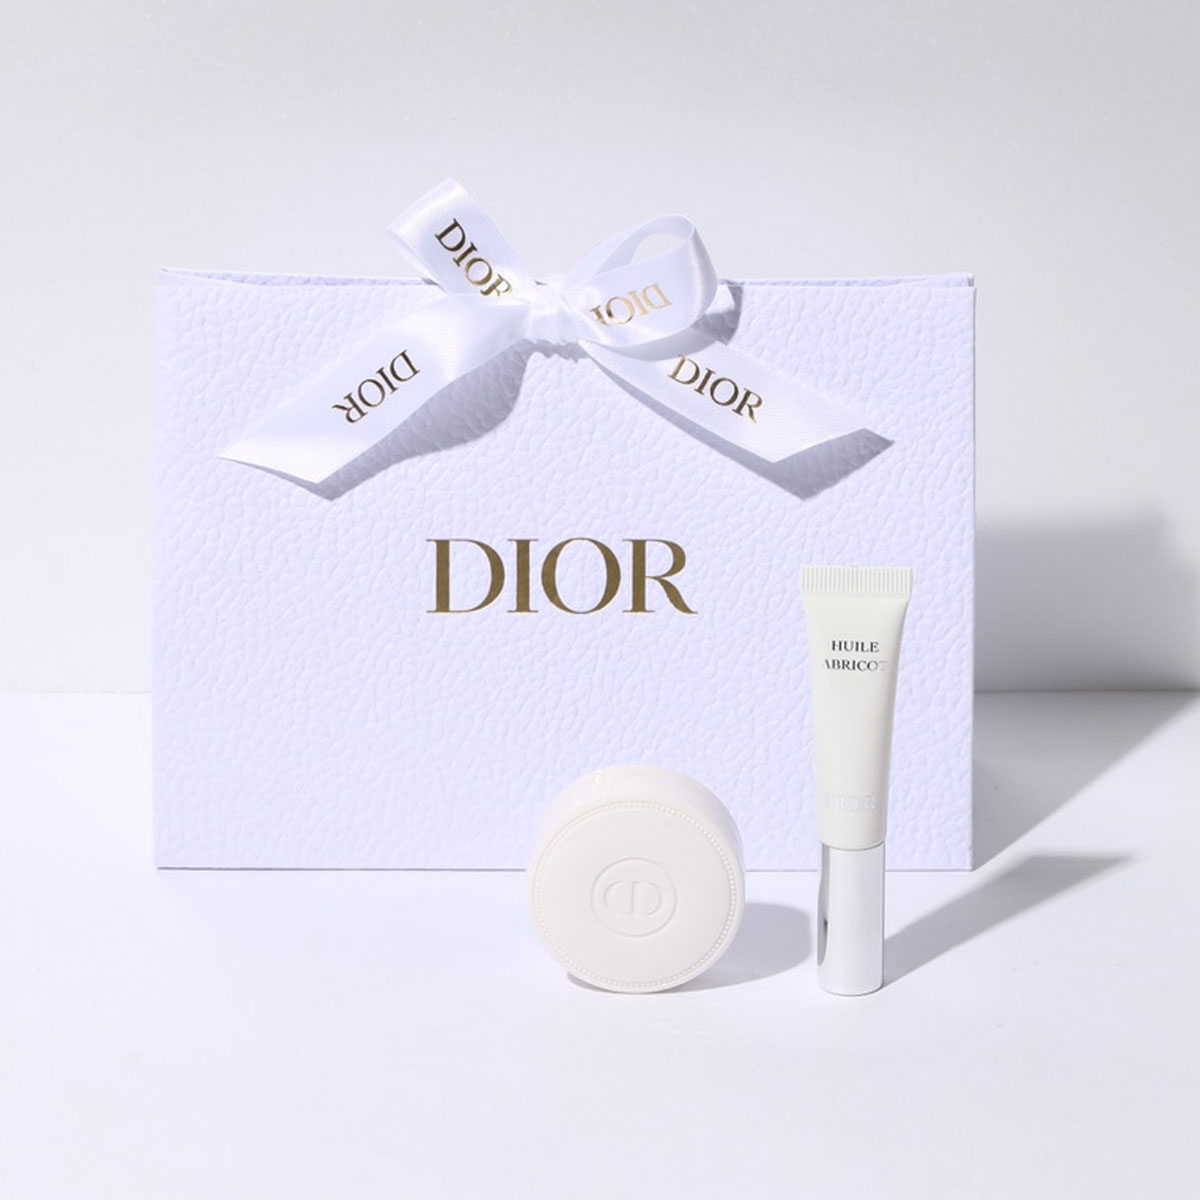  ディオール Dior ネイルケアセット ギフト ネイル専用クリーム ネイルクリーム セラム アブリコ ネイル美容液 ハンドケア コスメセット プレゼント コスメ ブランド プレゼント 保湿